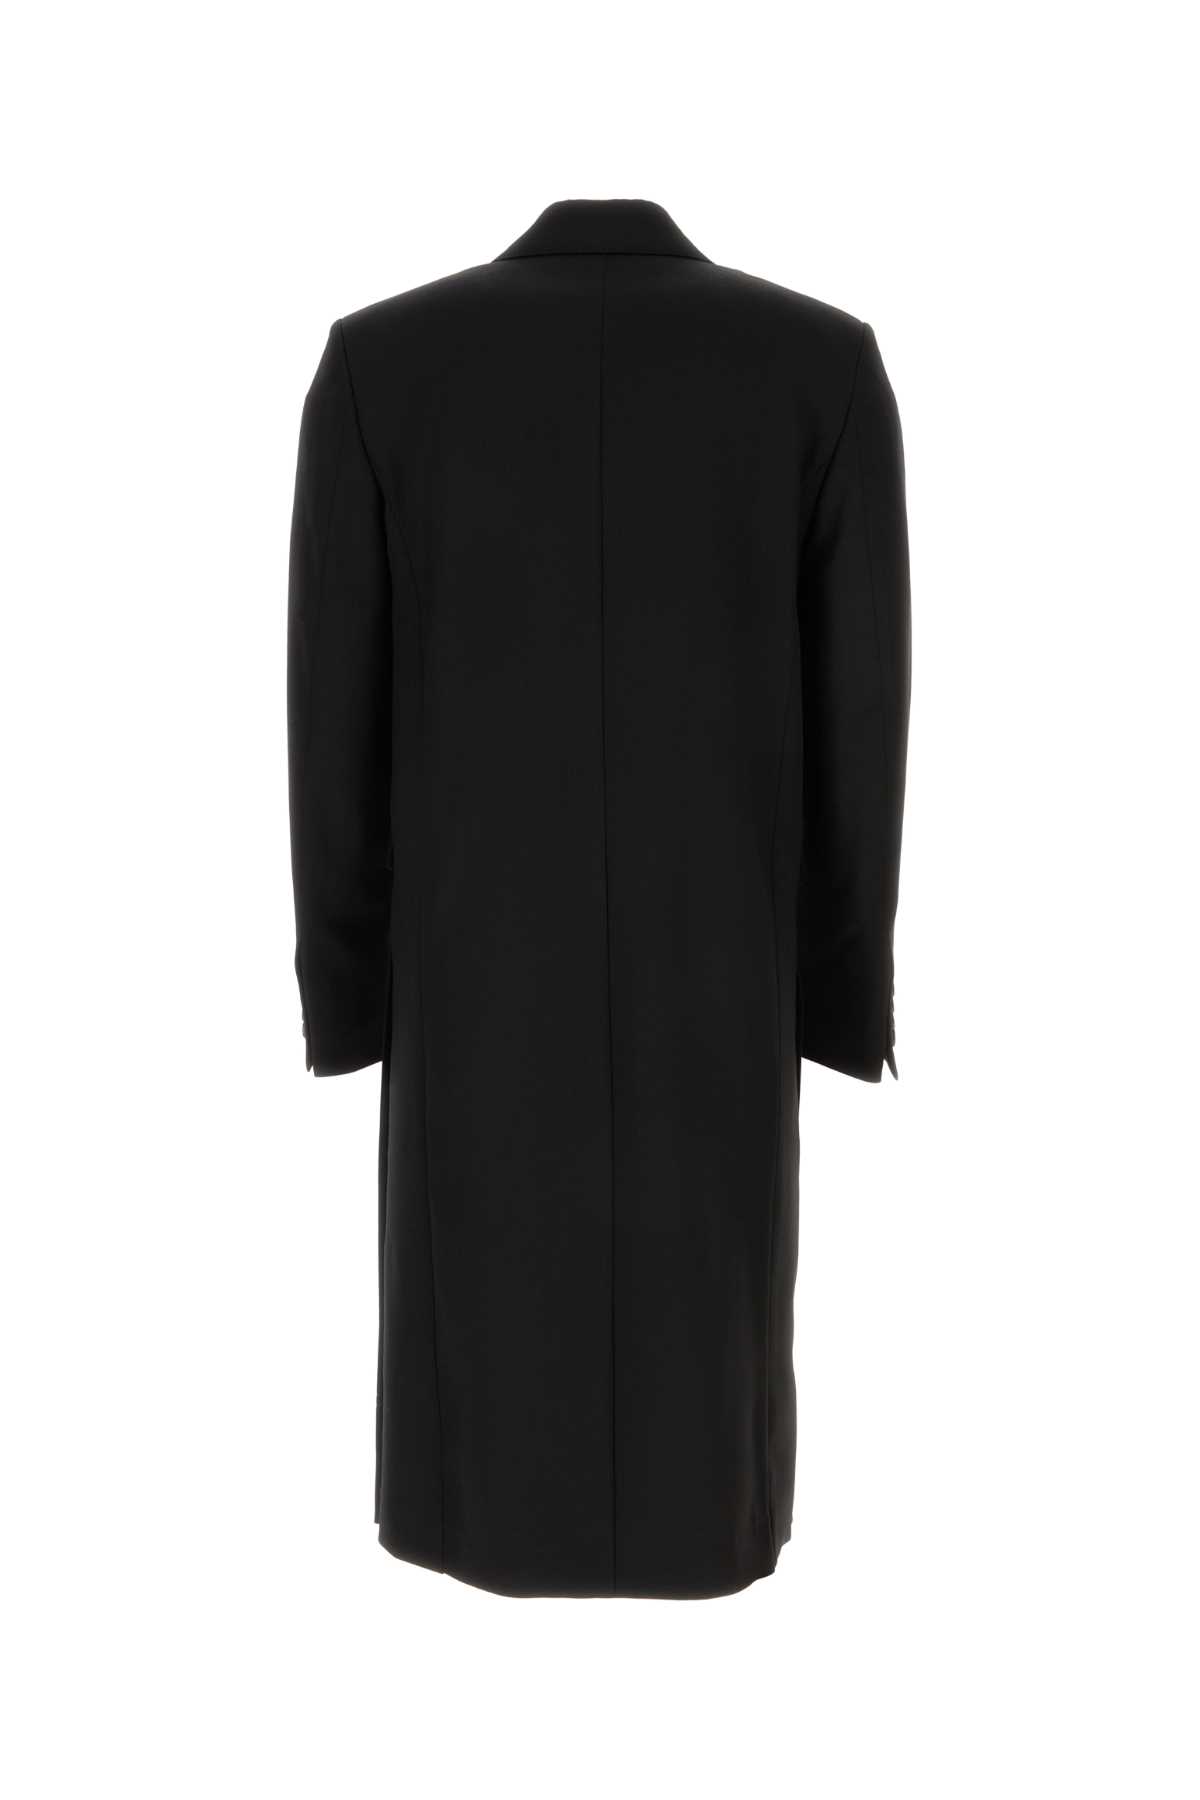 Shop Ami Alexandre Mattiussi Black Wool Coat